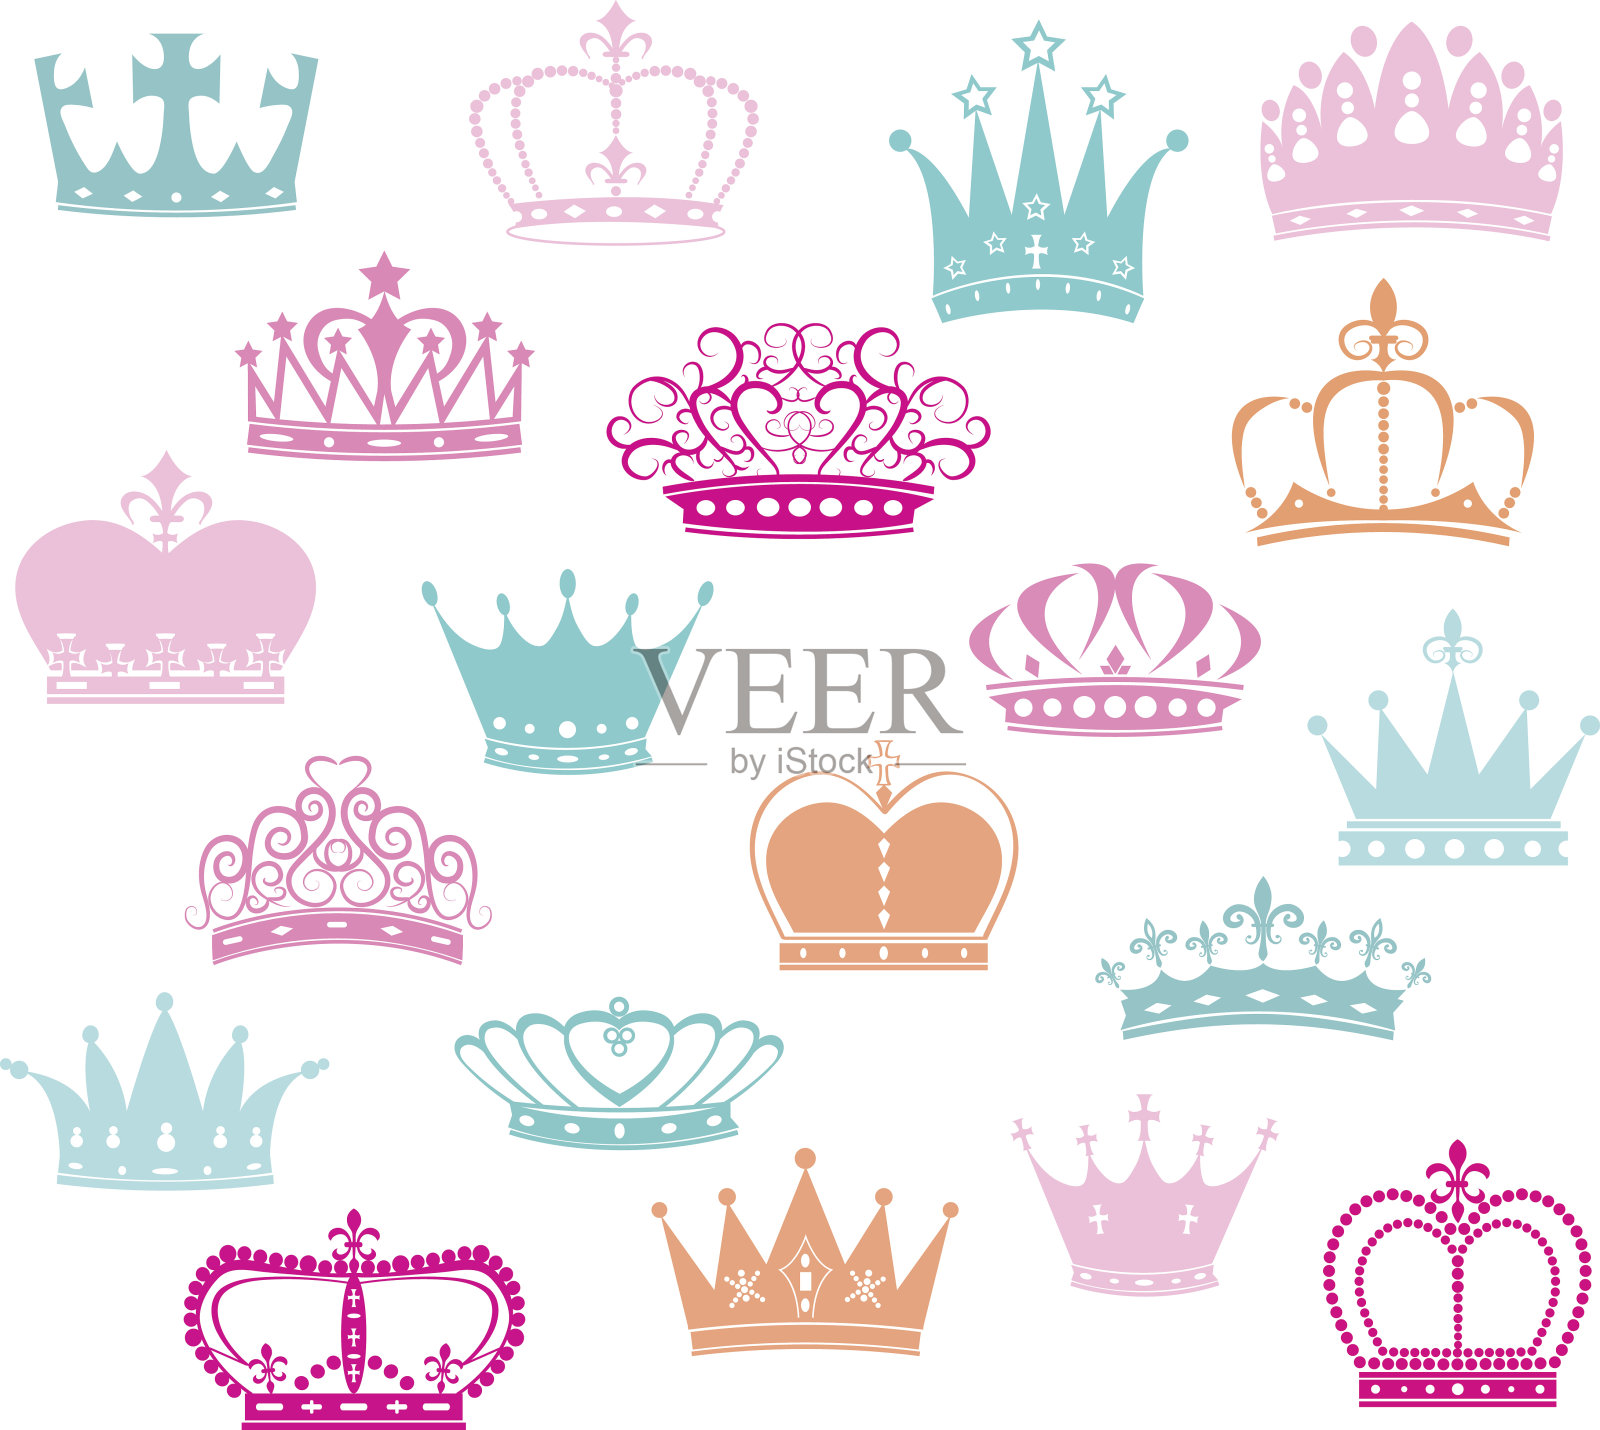 冠轮廓,公主皇冠插画图片素材